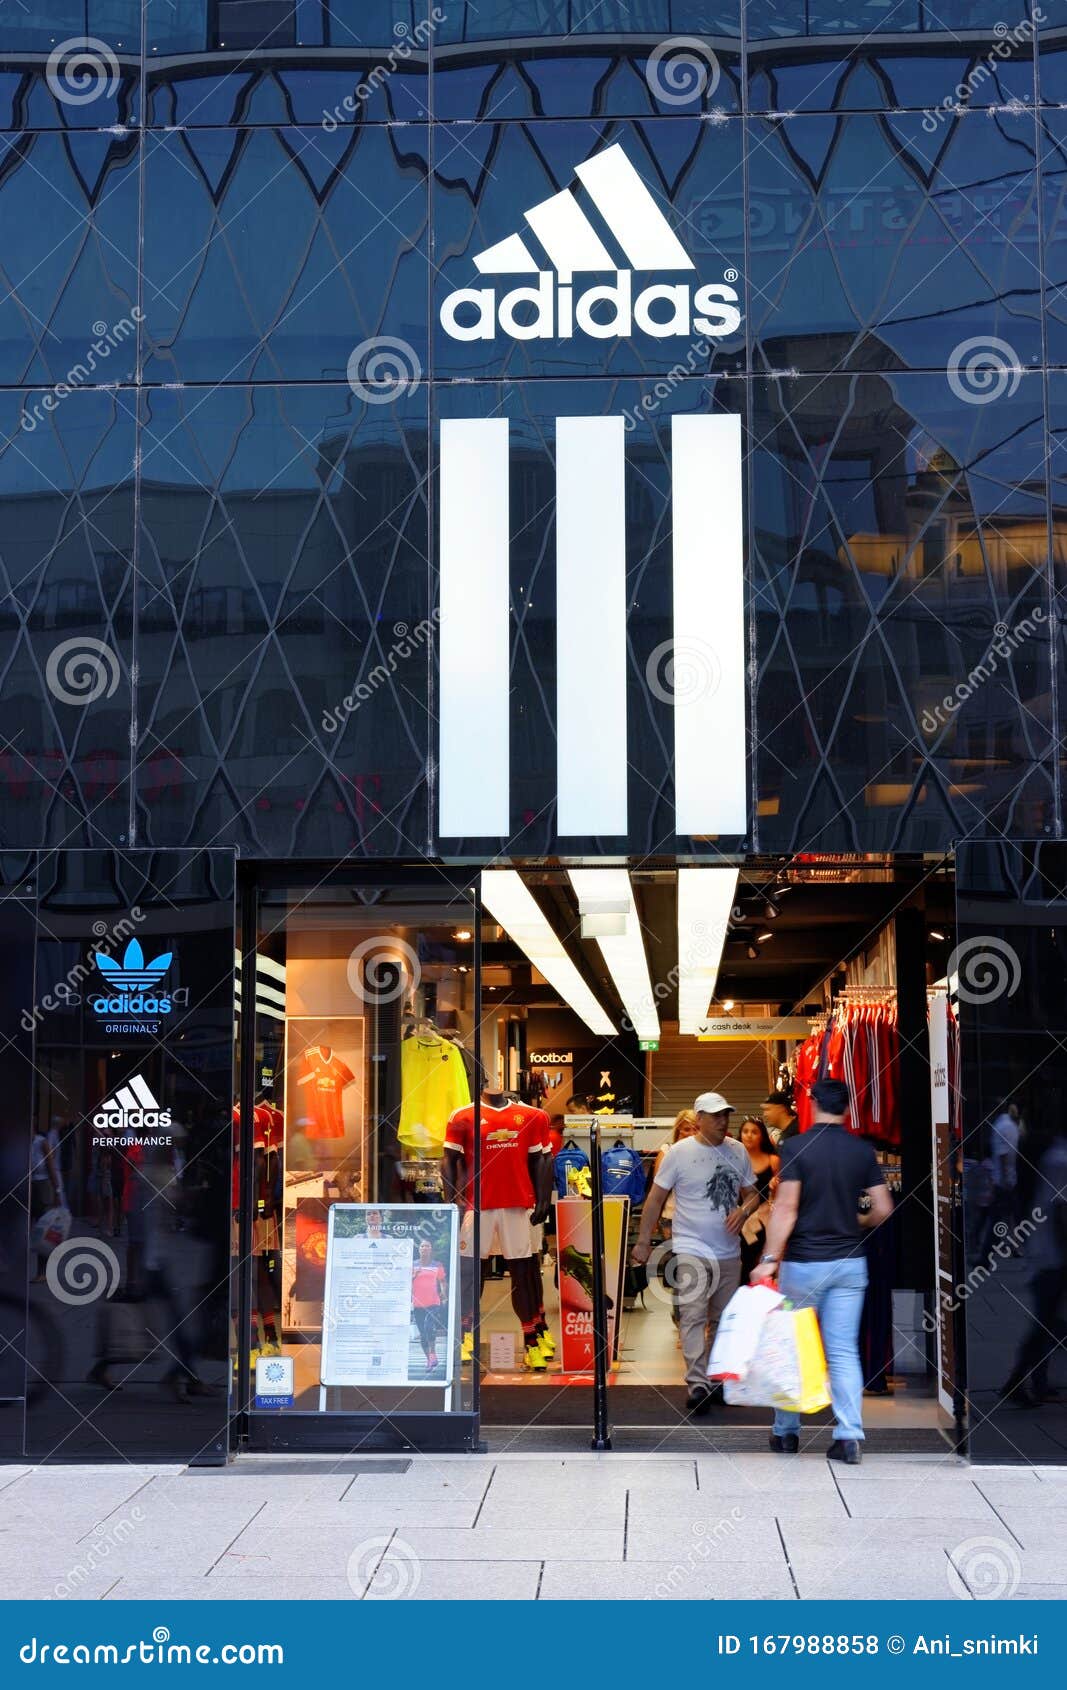 Potentieel Denken Schurk Adidas Shop in Frankfurt am Main, Duitsland Redactionele Stock Foto - Image  of achtergrond, kopen: 167988858